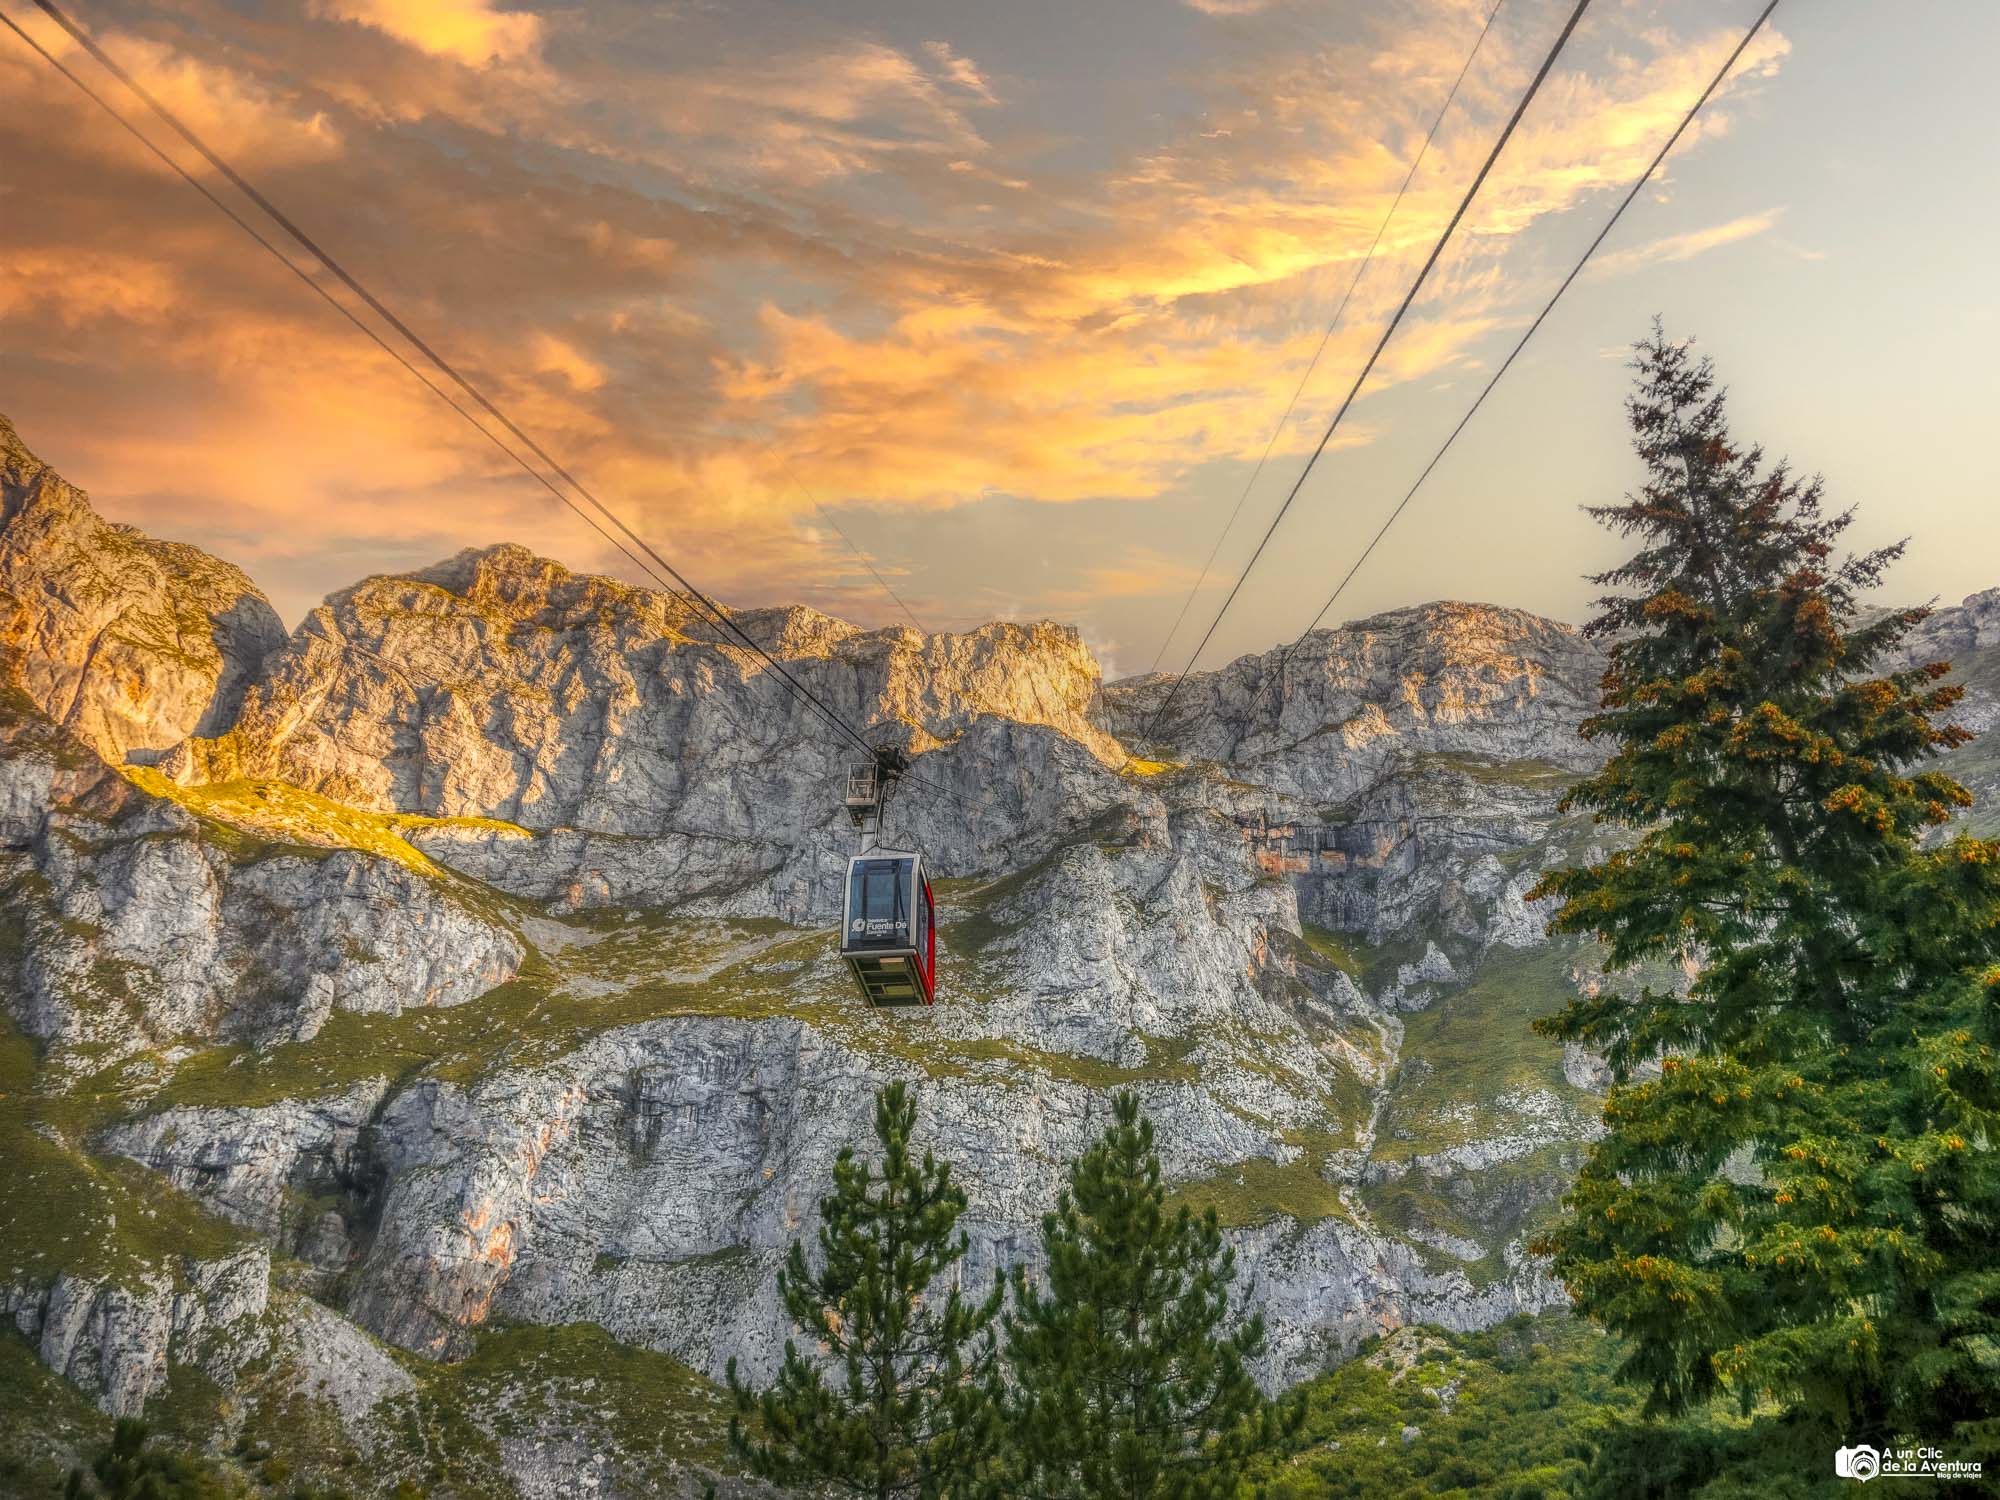 Teleférico de Fuente Dé, Picos de Europa - Viajar en verano